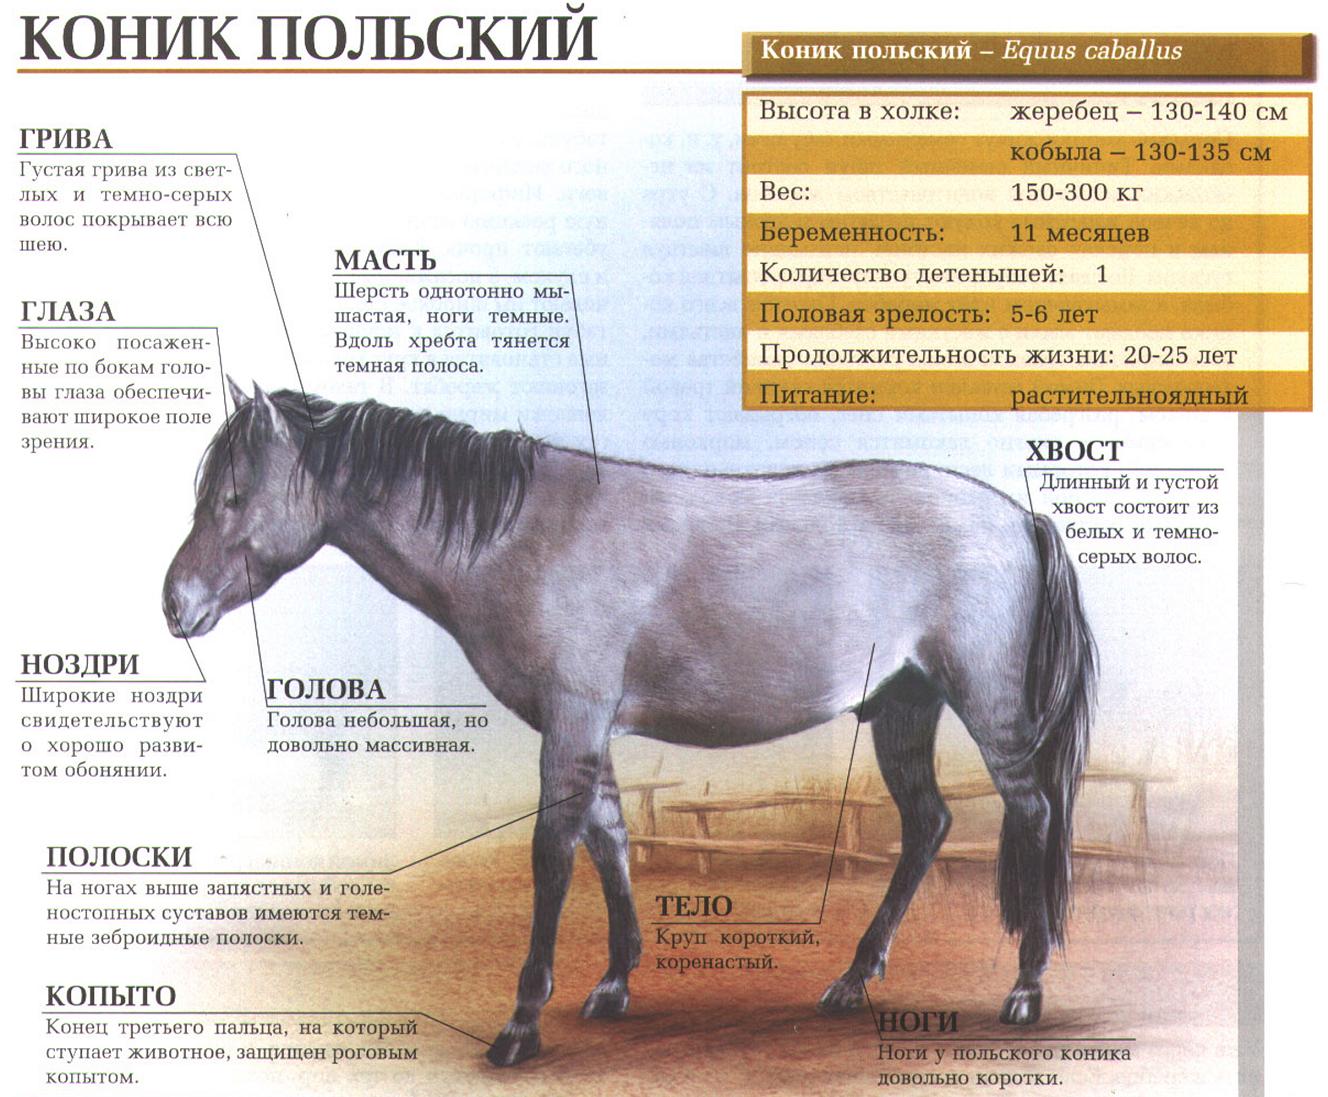 Польский коник или тарпан.:::Тарпан (польский коник).